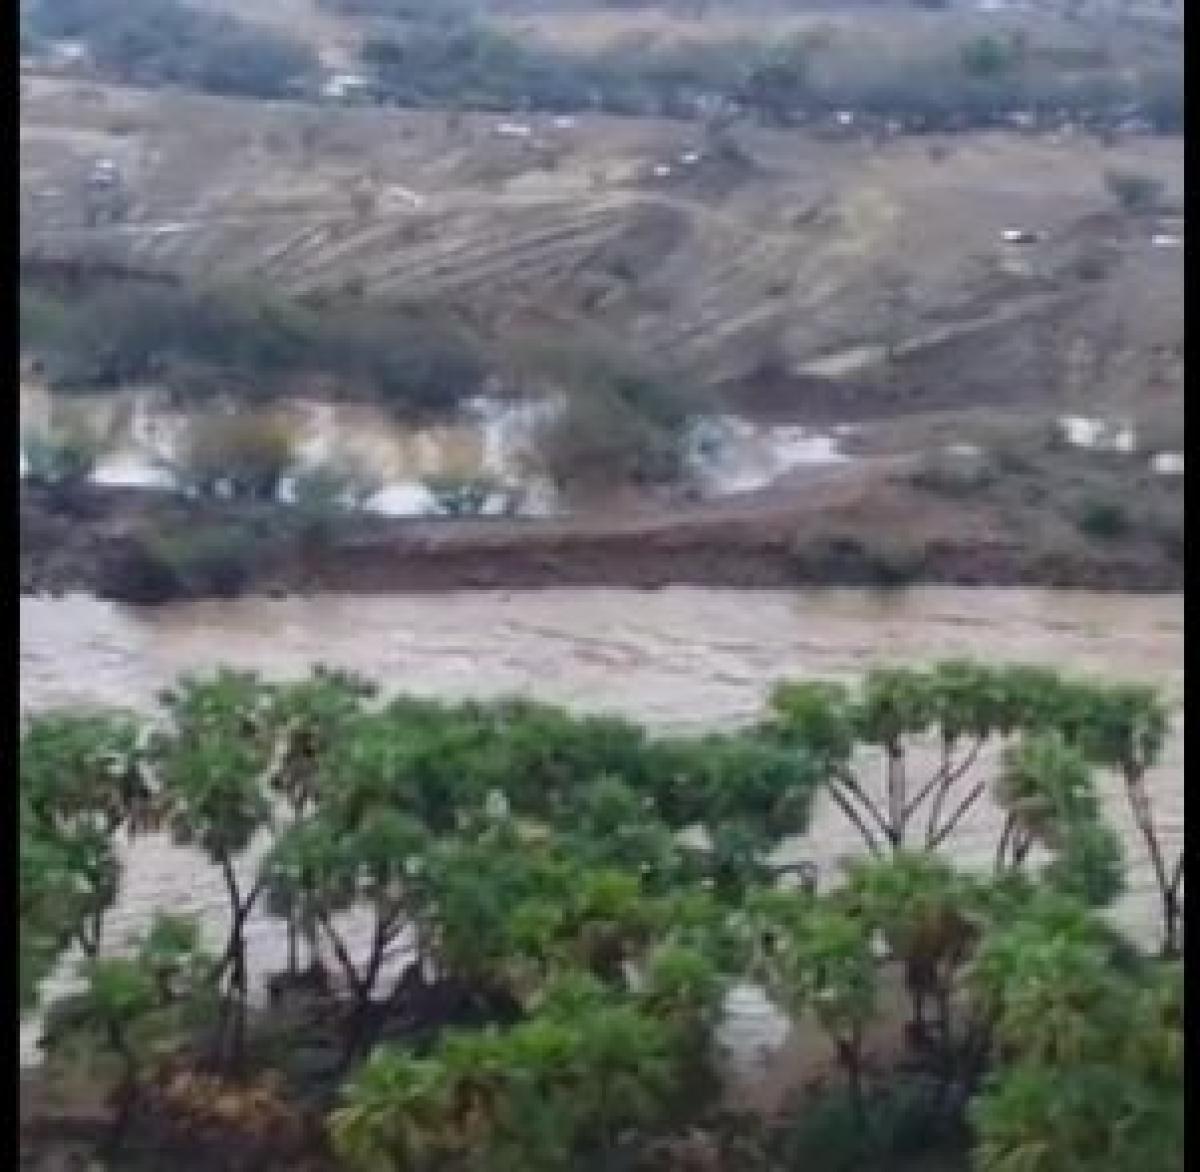 لقطات ترصد جريان السيول جنوب الفطيحة بمنطقة جازان
منطقة جازان